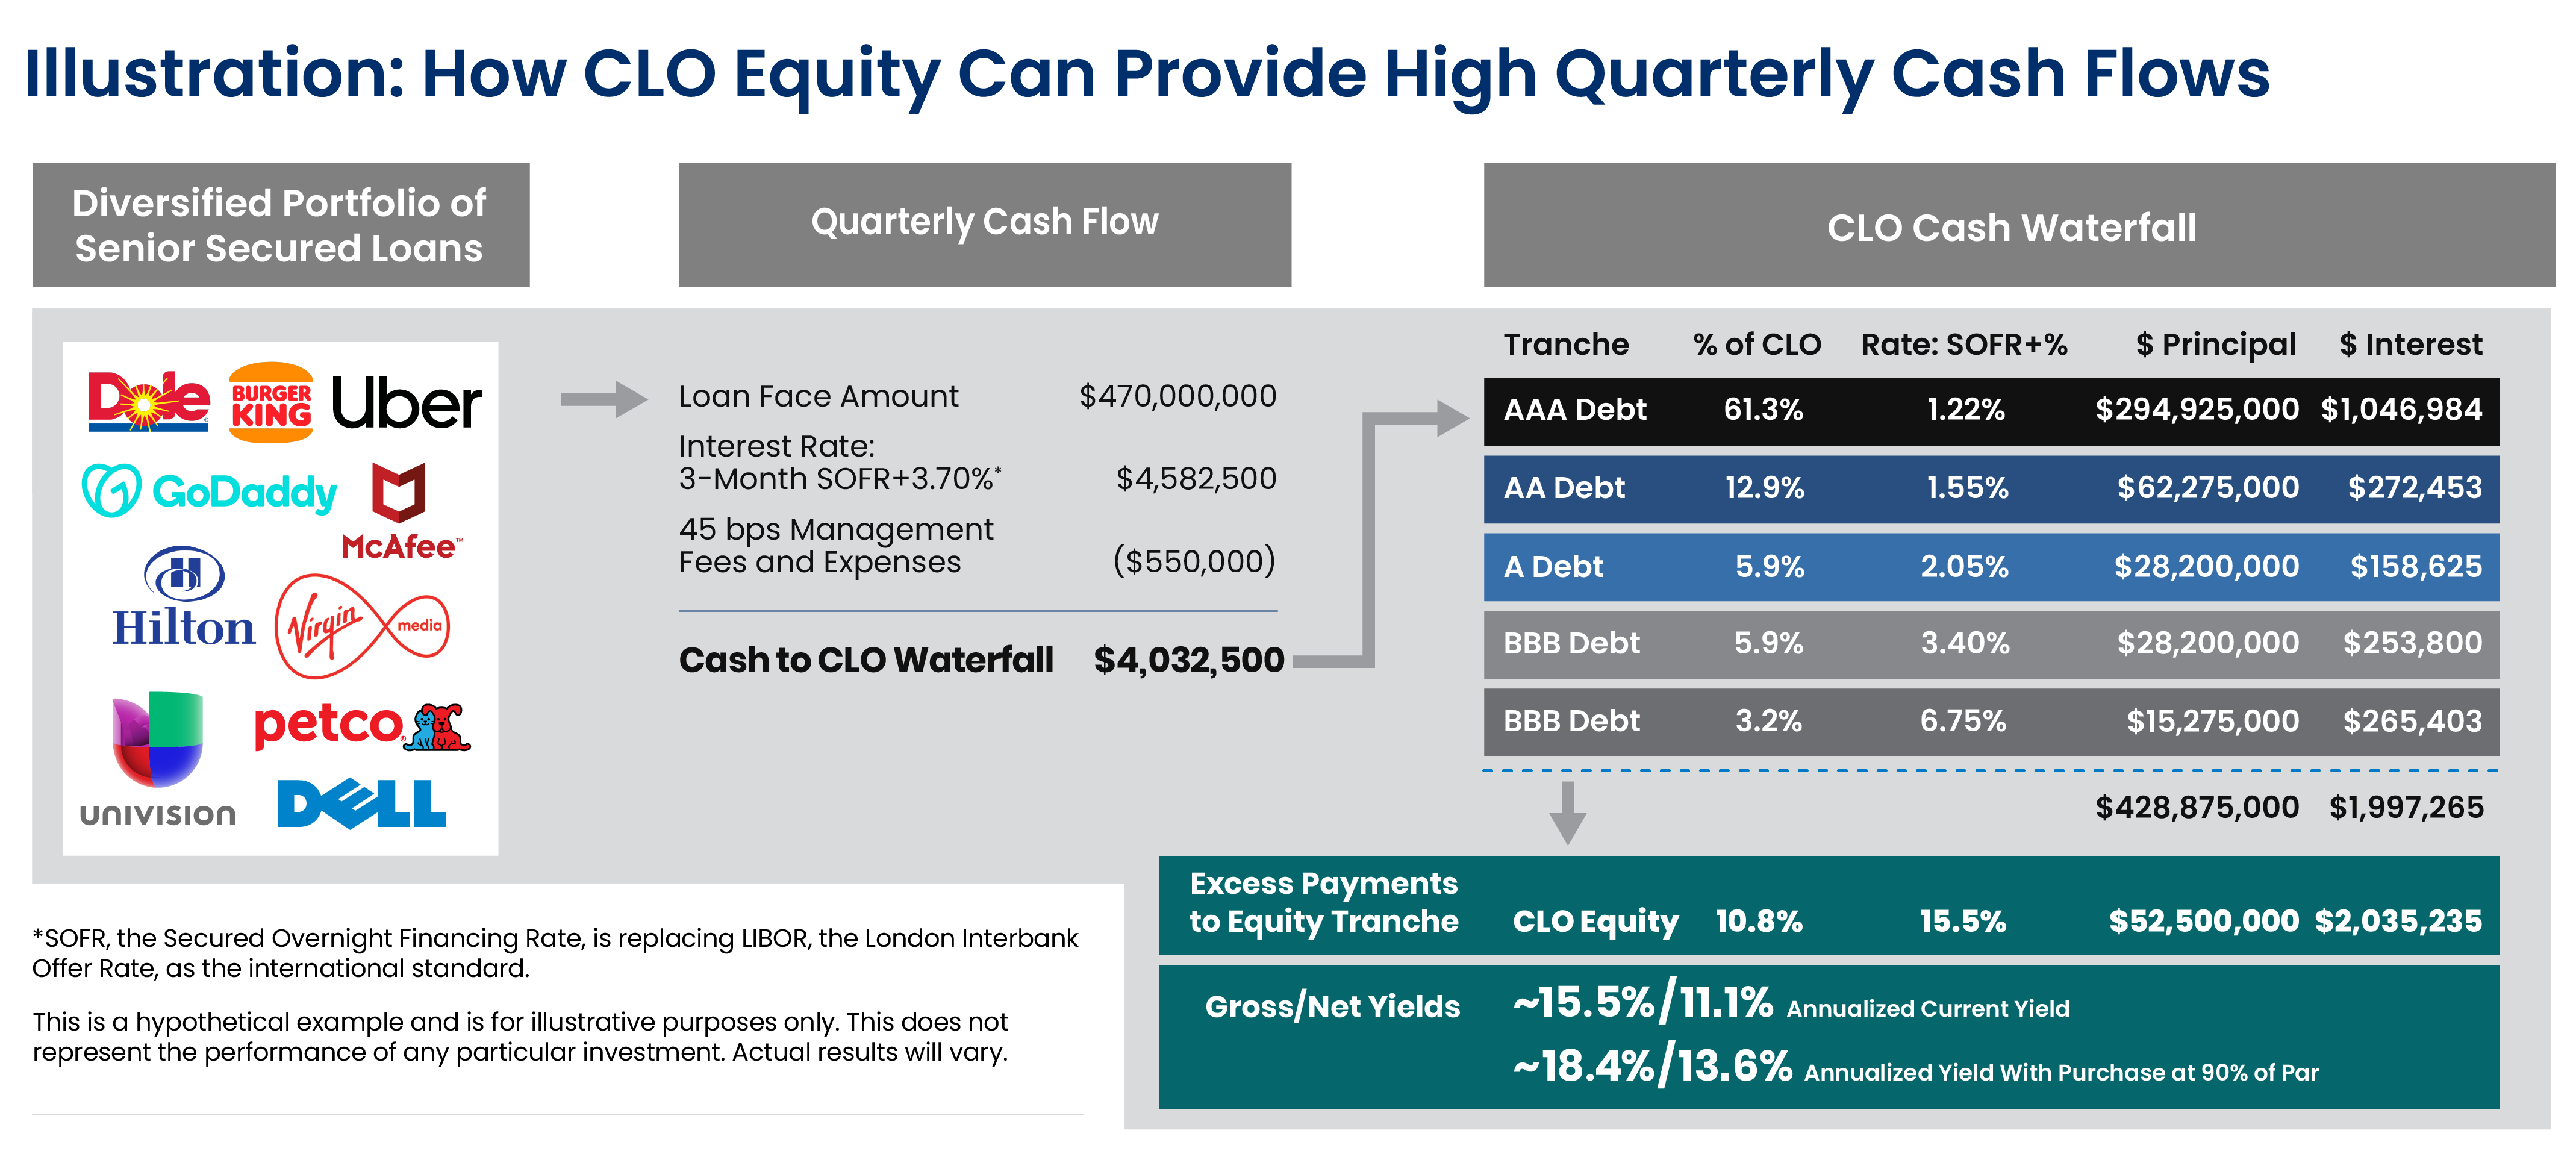 DRAFT - 32488 CP Blog CLO Equity Quarterly Cash Flow infographic